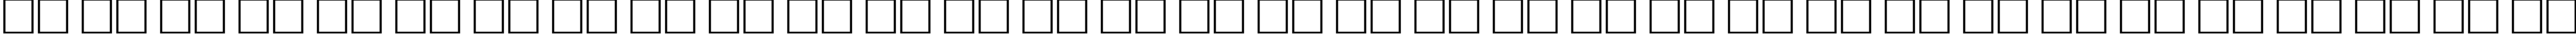 Пример написания русского алфавита шрифтом BauhausLightCTT